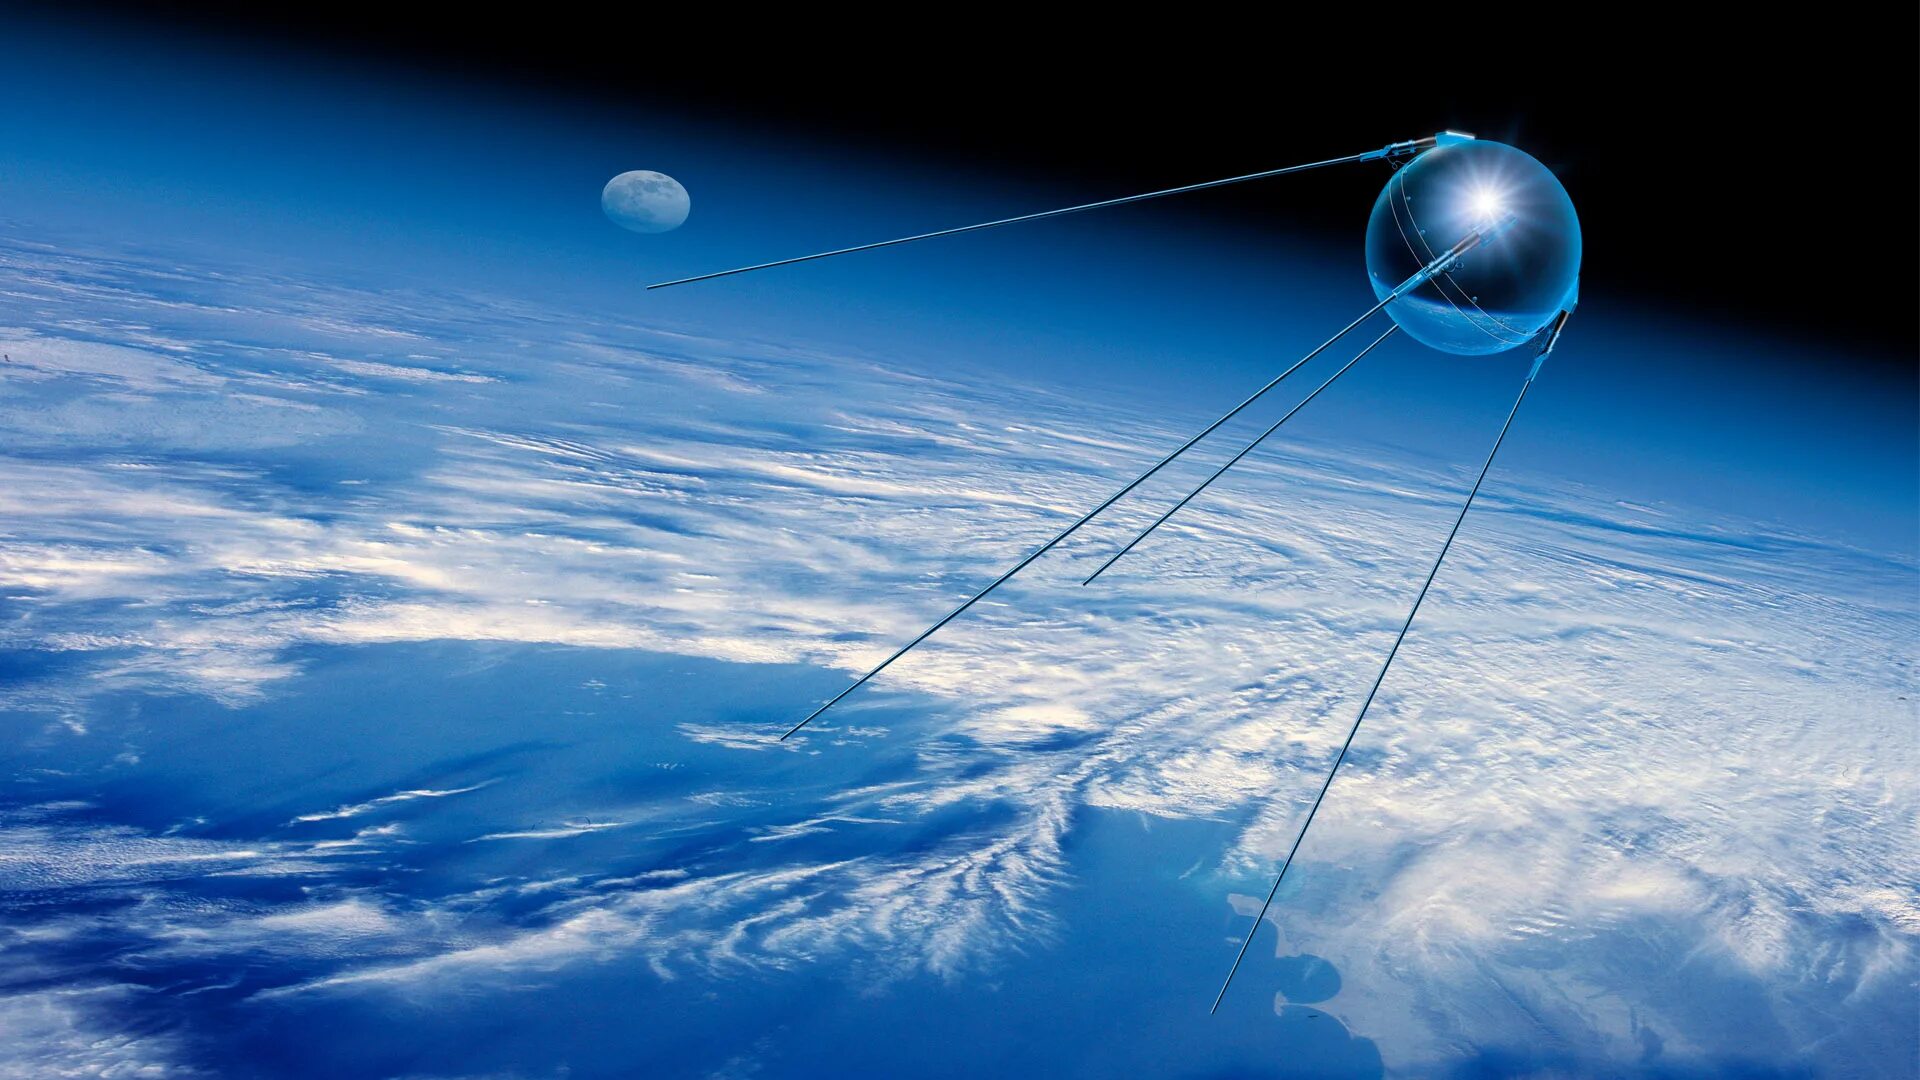 Фото первого искусственного спутника. Спутник 1 первый искусственный Спутник земли. «Спутник-1», первый искуссттвенный Спутник. Первый искусственный Спутник земли 1957. ПС-1 Спутник.